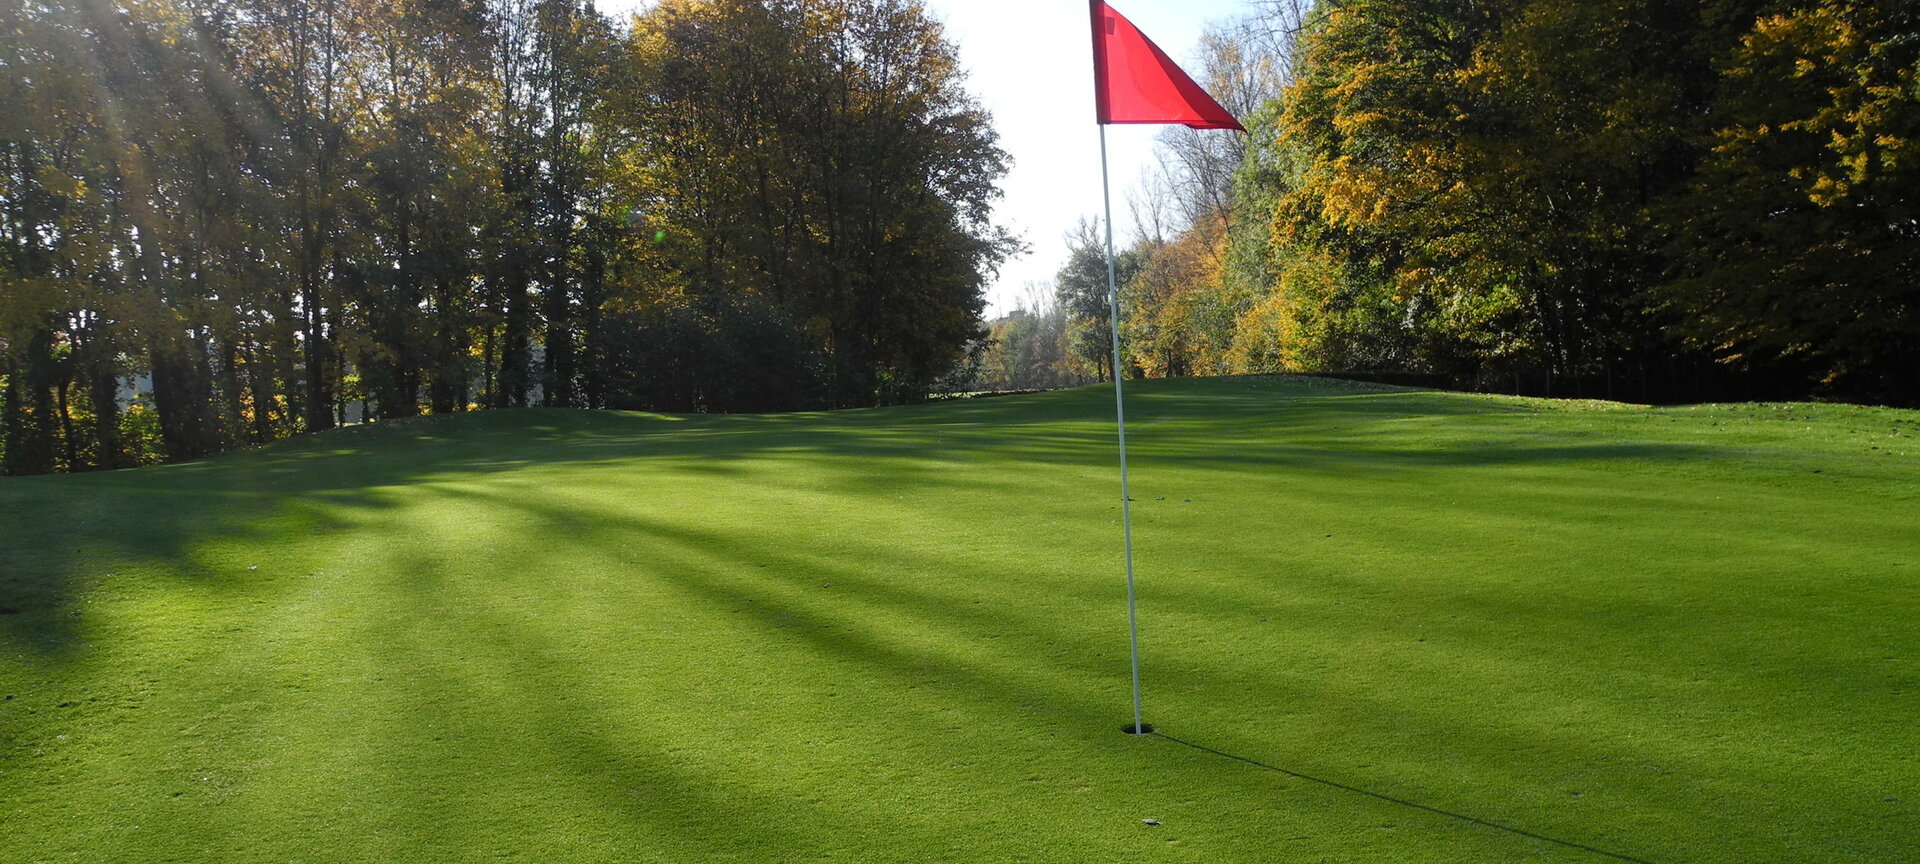 Golfclub Hasselt - green 1